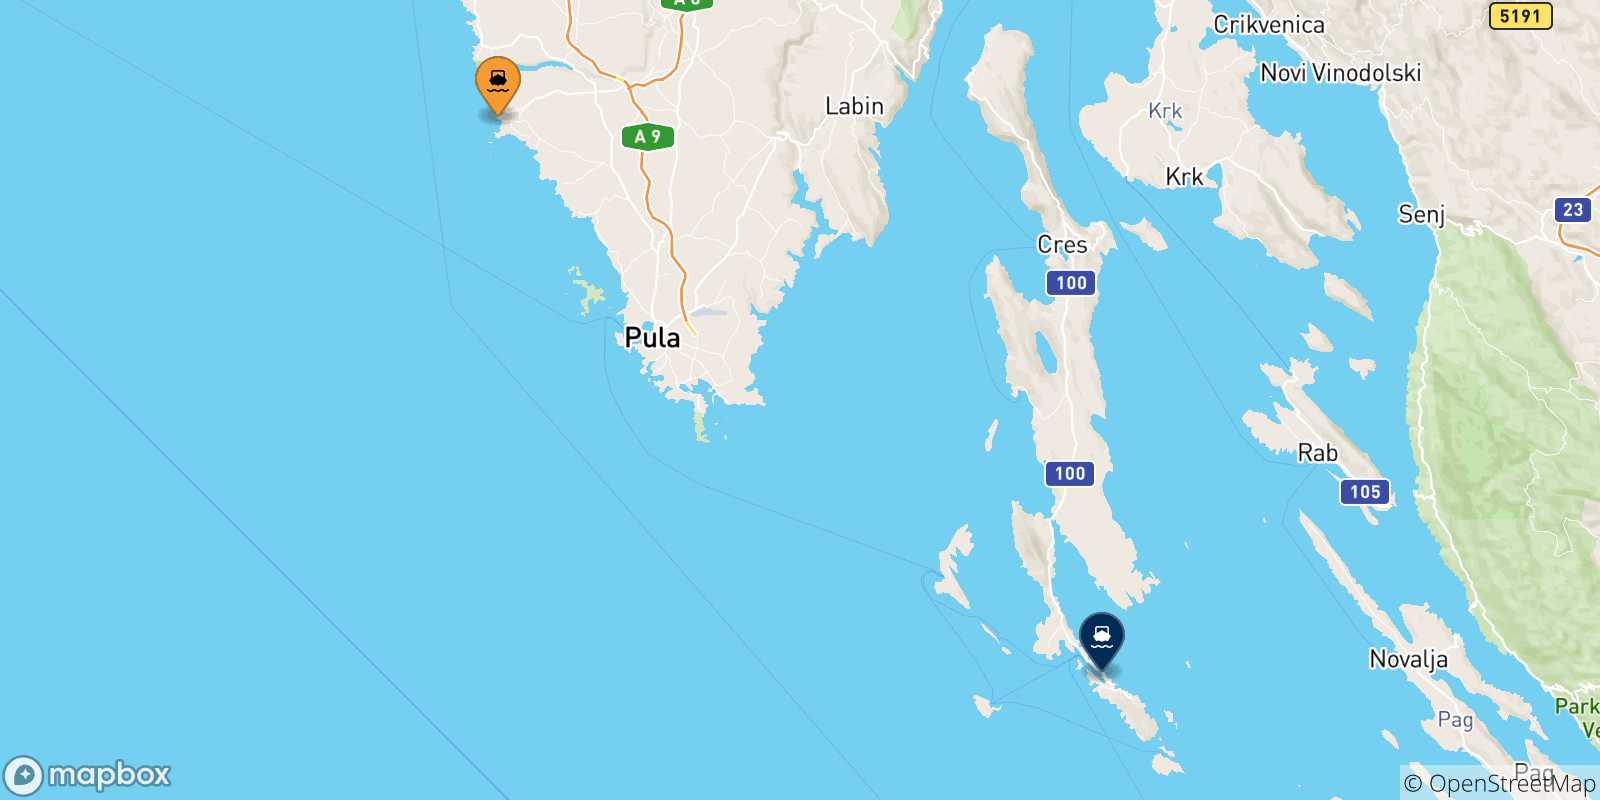 Mappa delle possibili rotte tra la Croazia e Lussinpiccolo